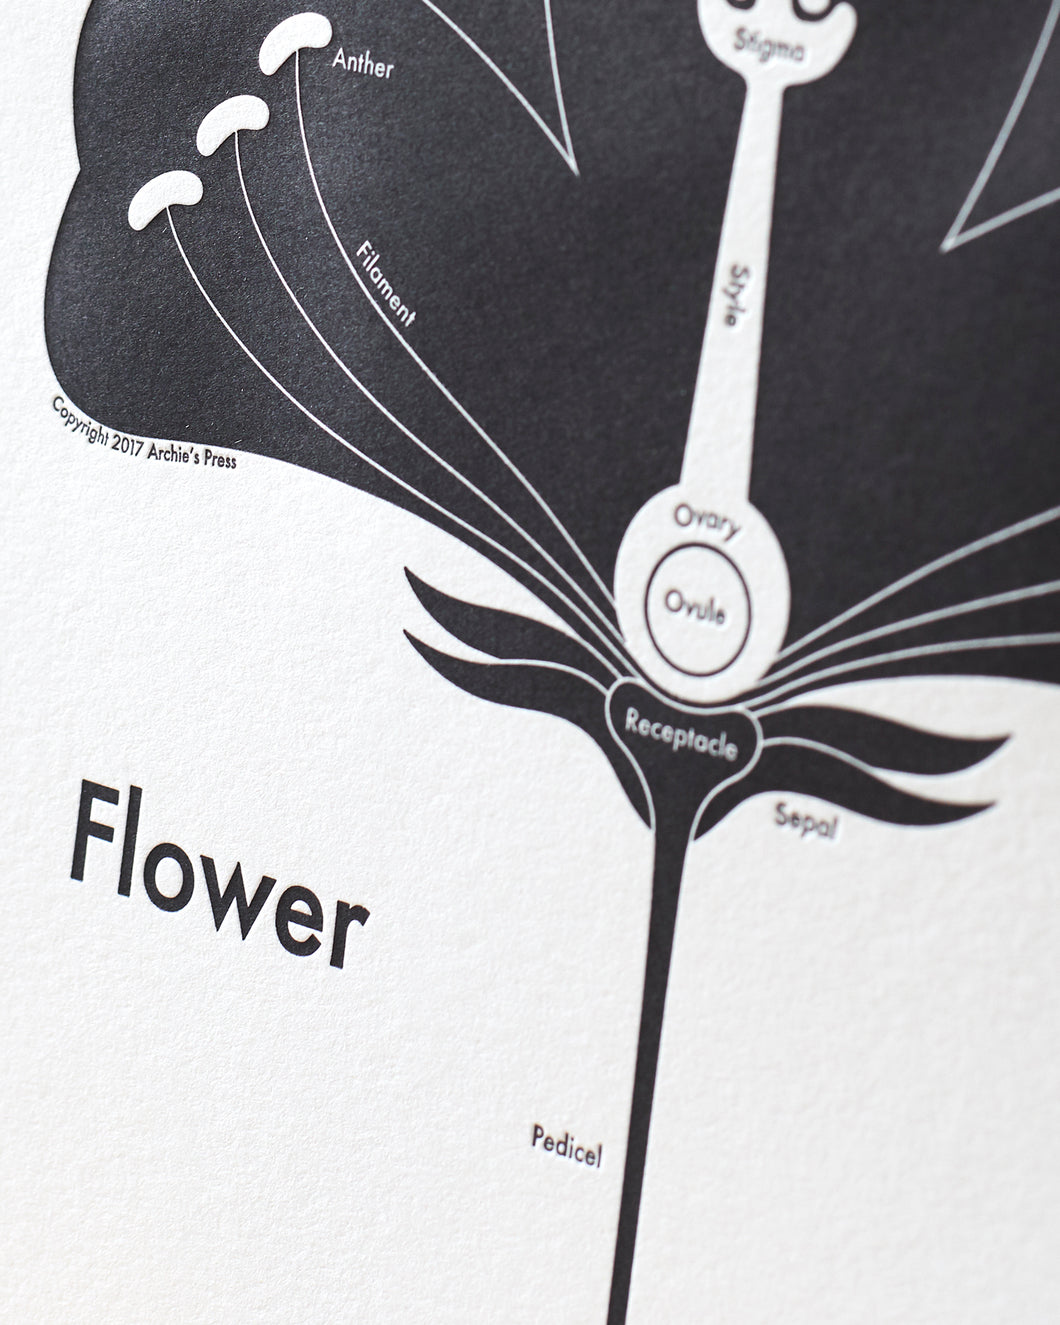 Flower Print